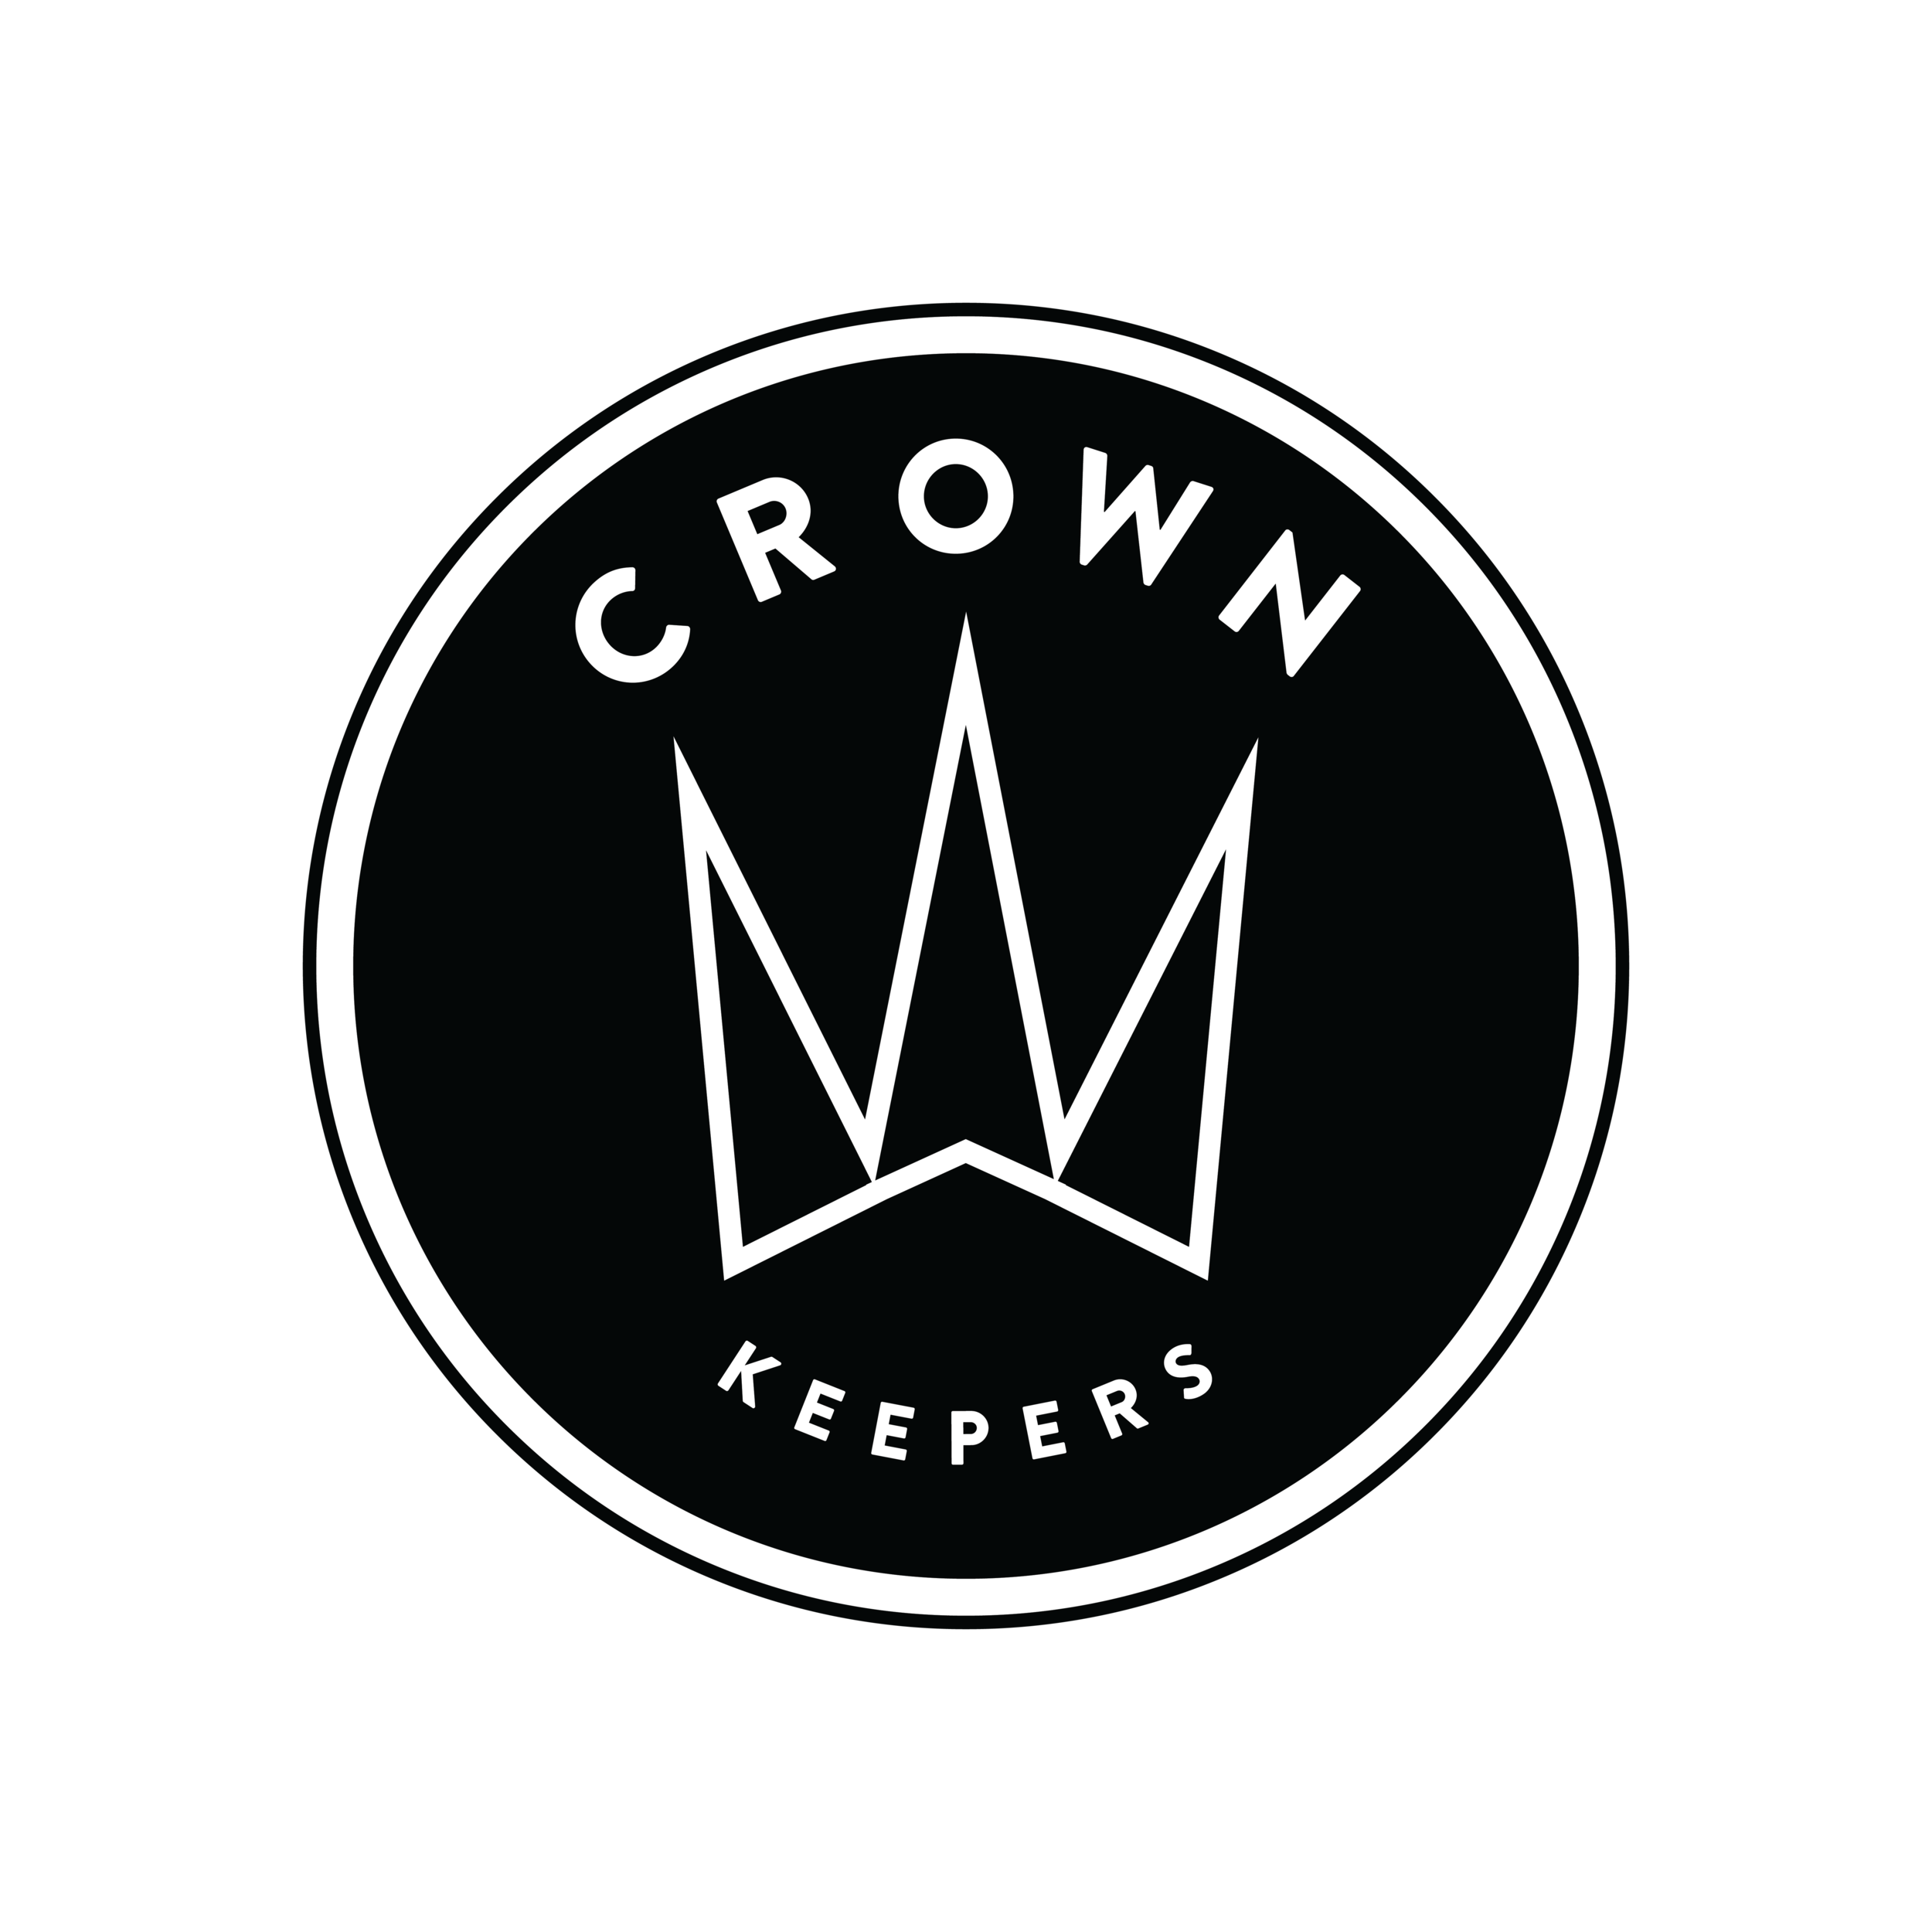 CrownKeepers